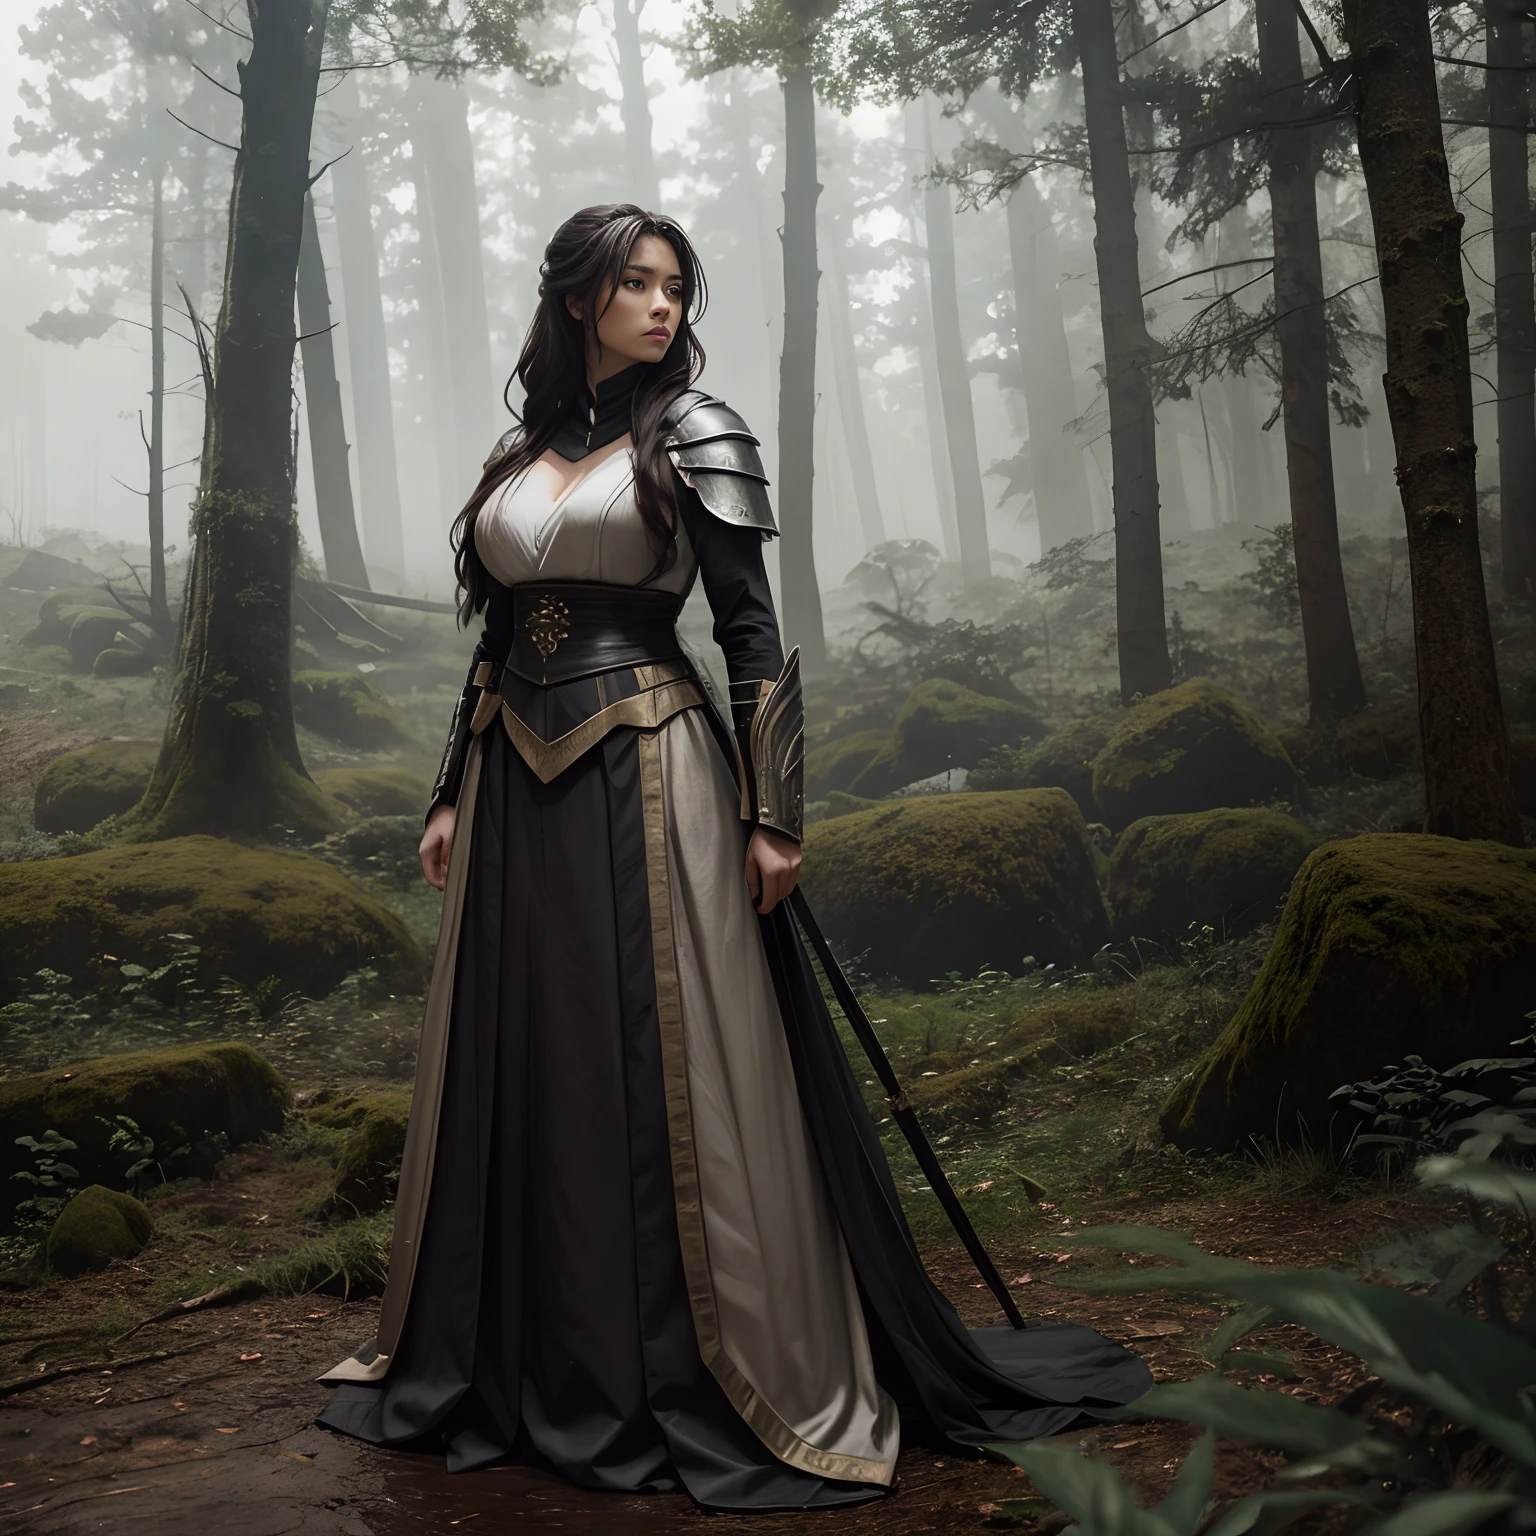 Niebla en el bosque, Una guerrera tomando un breve respiro, Vestir vestido completamente vestido, giga_tetona